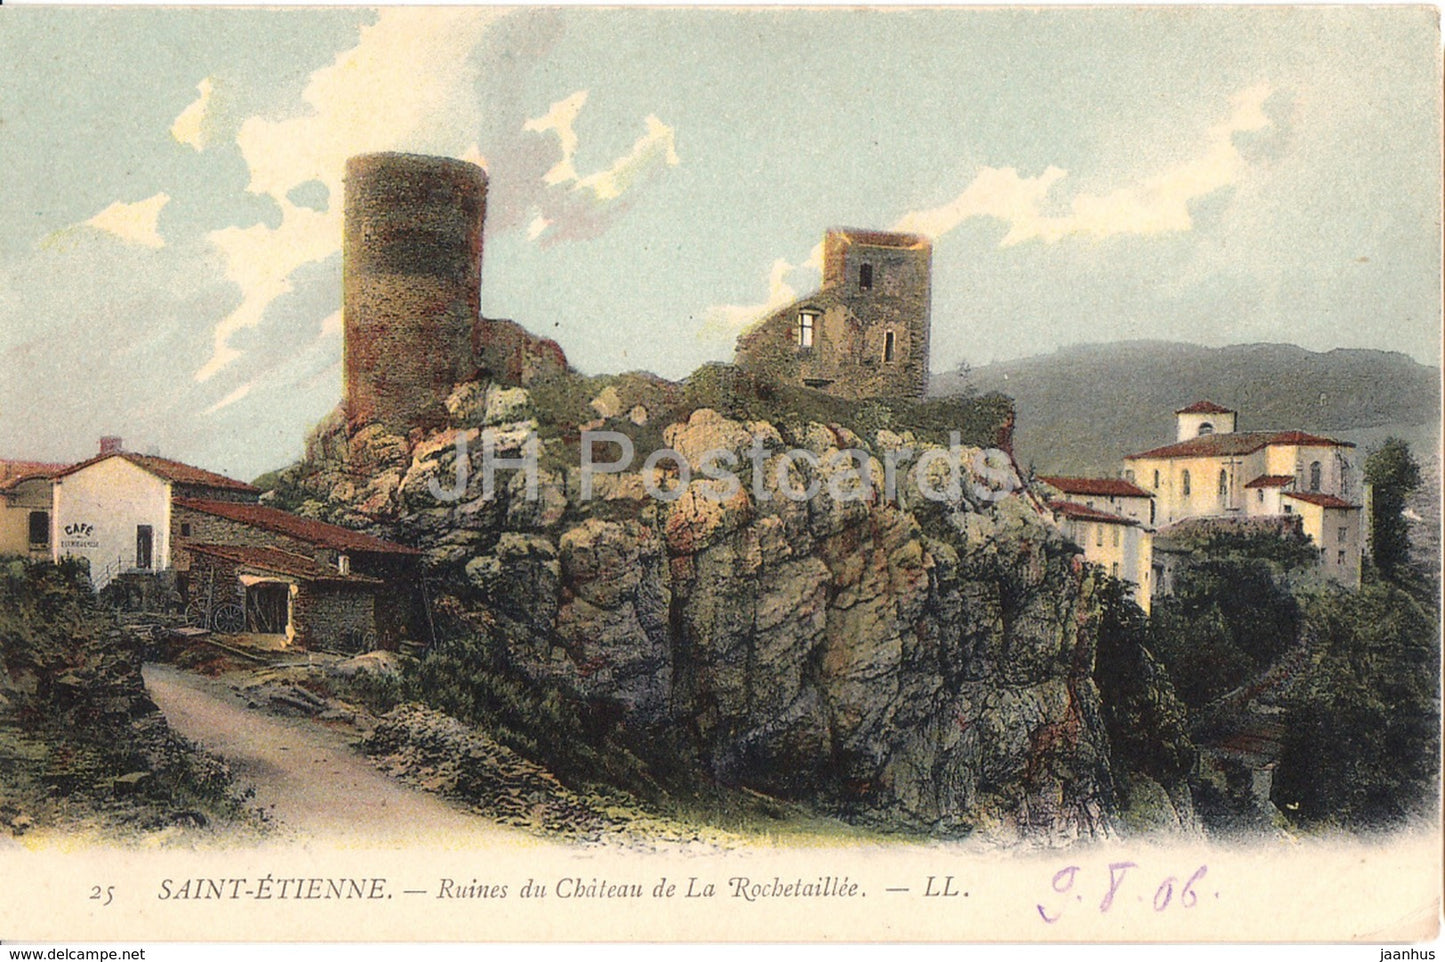 Saint Etienne - Ruines du Chateau de La Rochetaillee - castle - 25 - old postcard - France - unused - JH Postcards